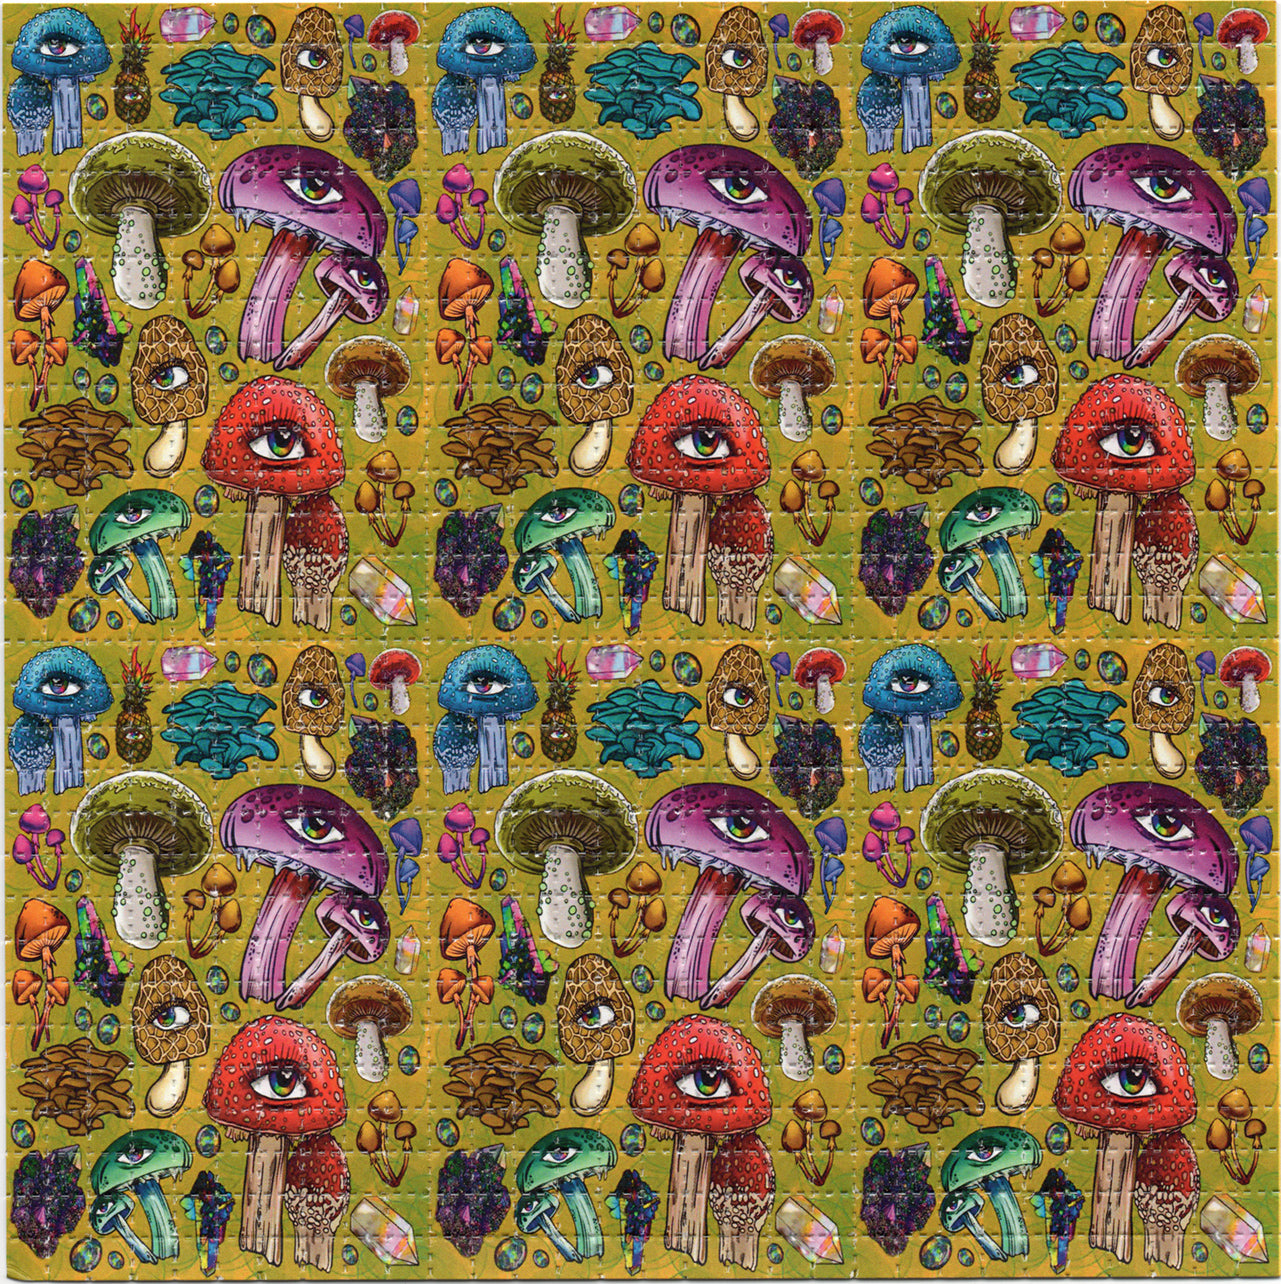 Mushrooms by Ellie Paisley Brooks Limited Edition LSD blotter art print